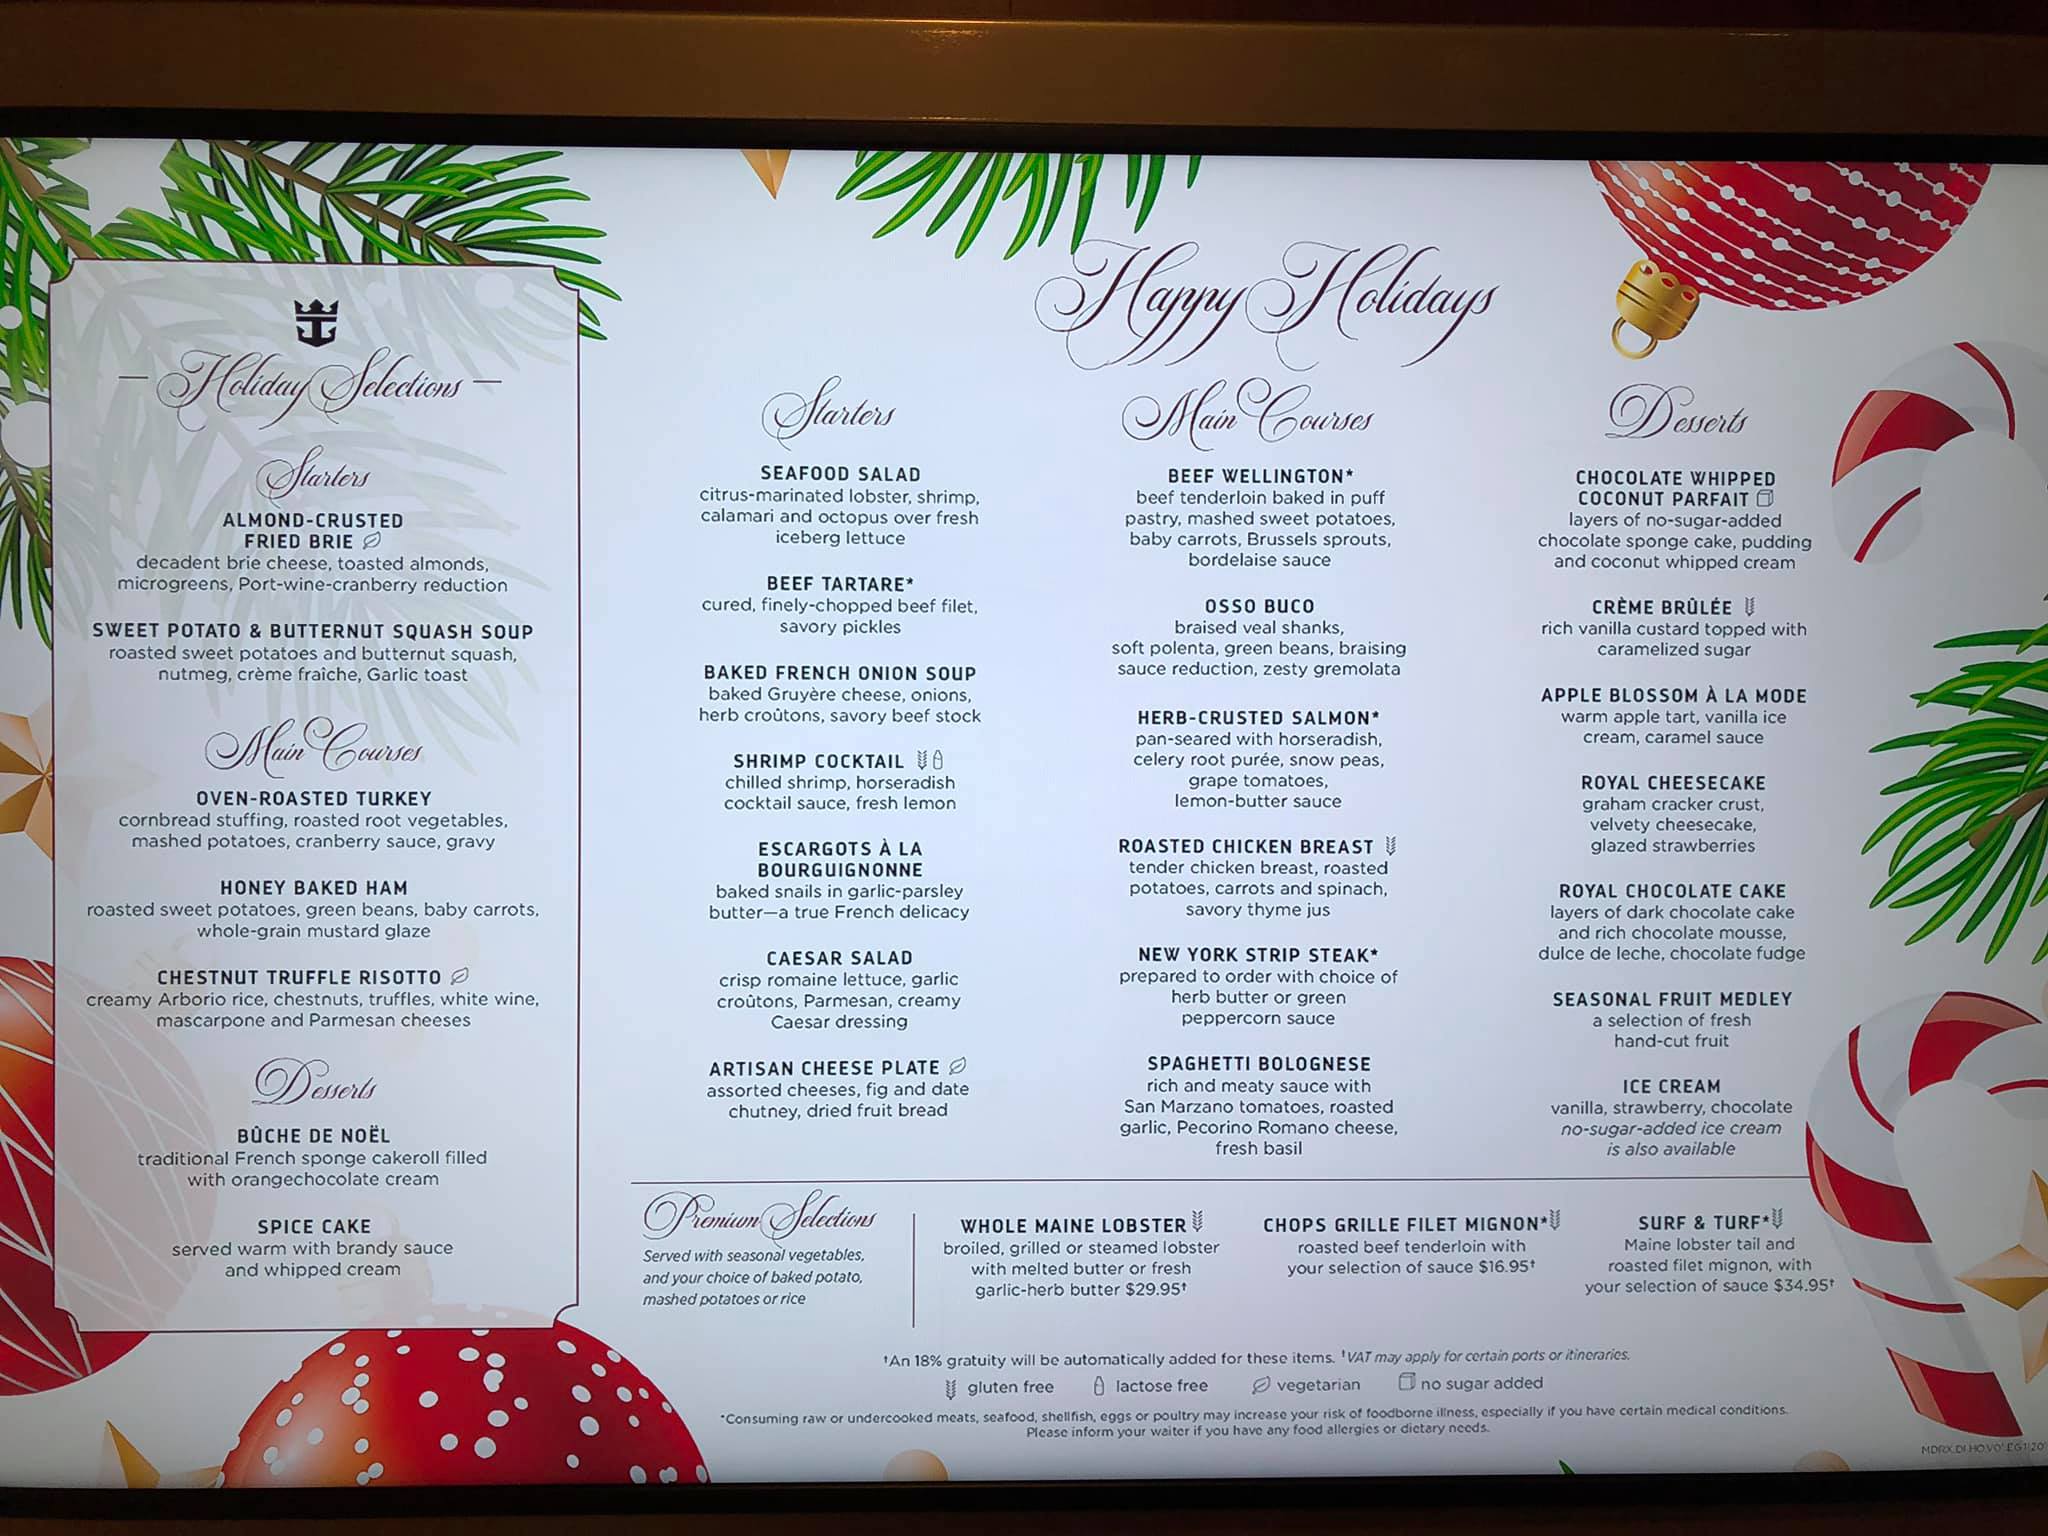 A look at the Christmas dinner menu on Royal Caribbean Royal